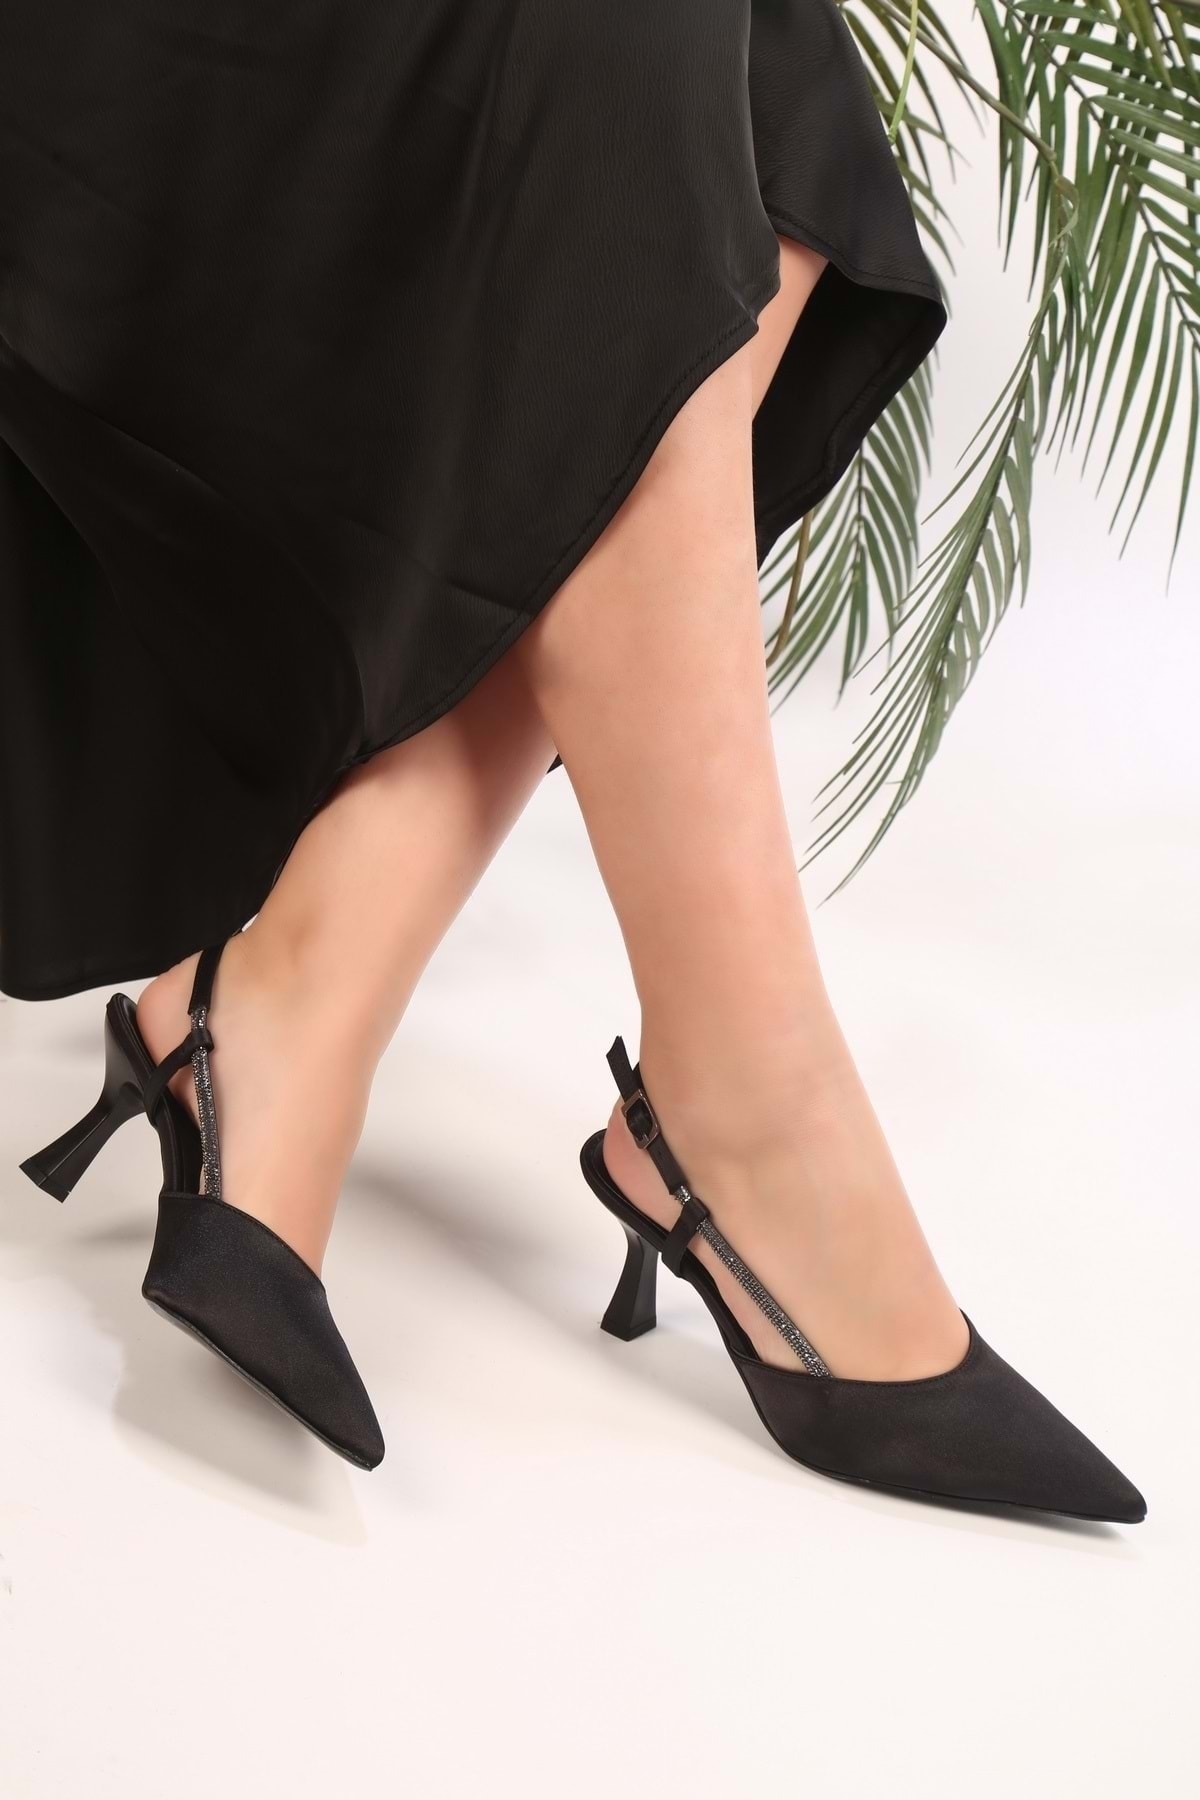 Shoeberry Kadın Eront Siyah Saten Taşlı Topuklu Ayakkabı Stiletto